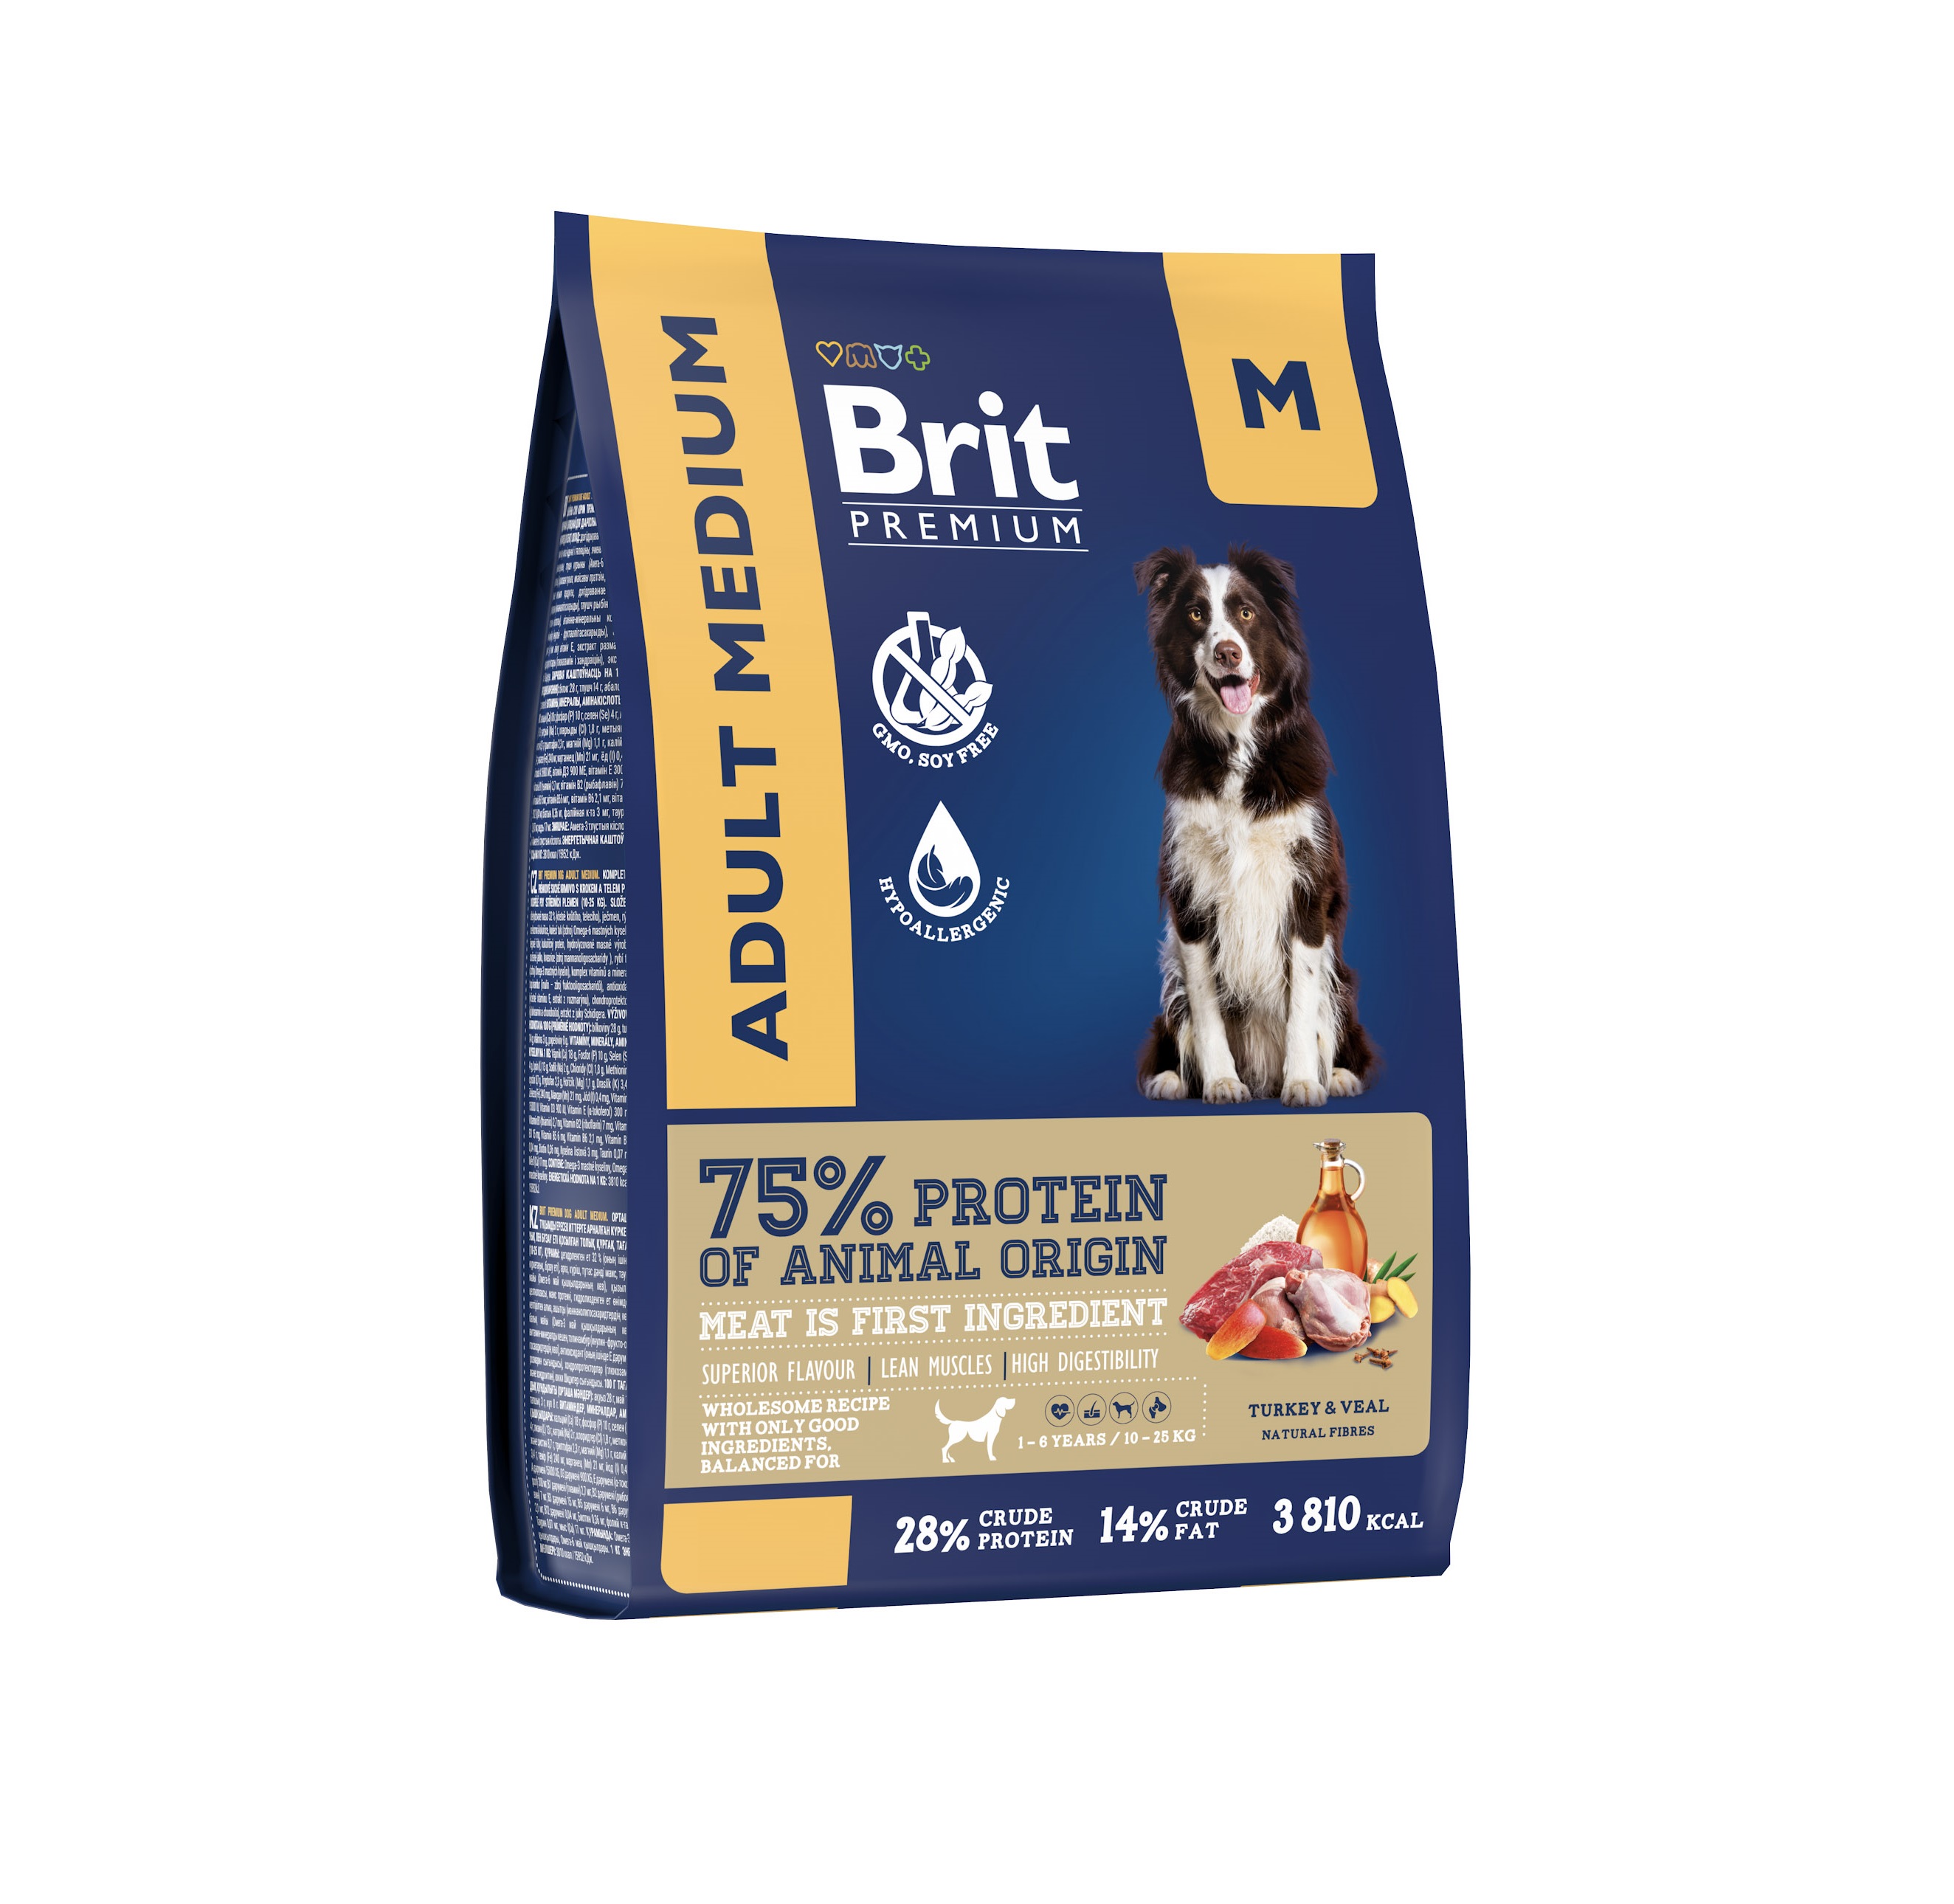 Брит 1кг для собак Средних пород Индейка/Телятина (Brit Premium by Nature)